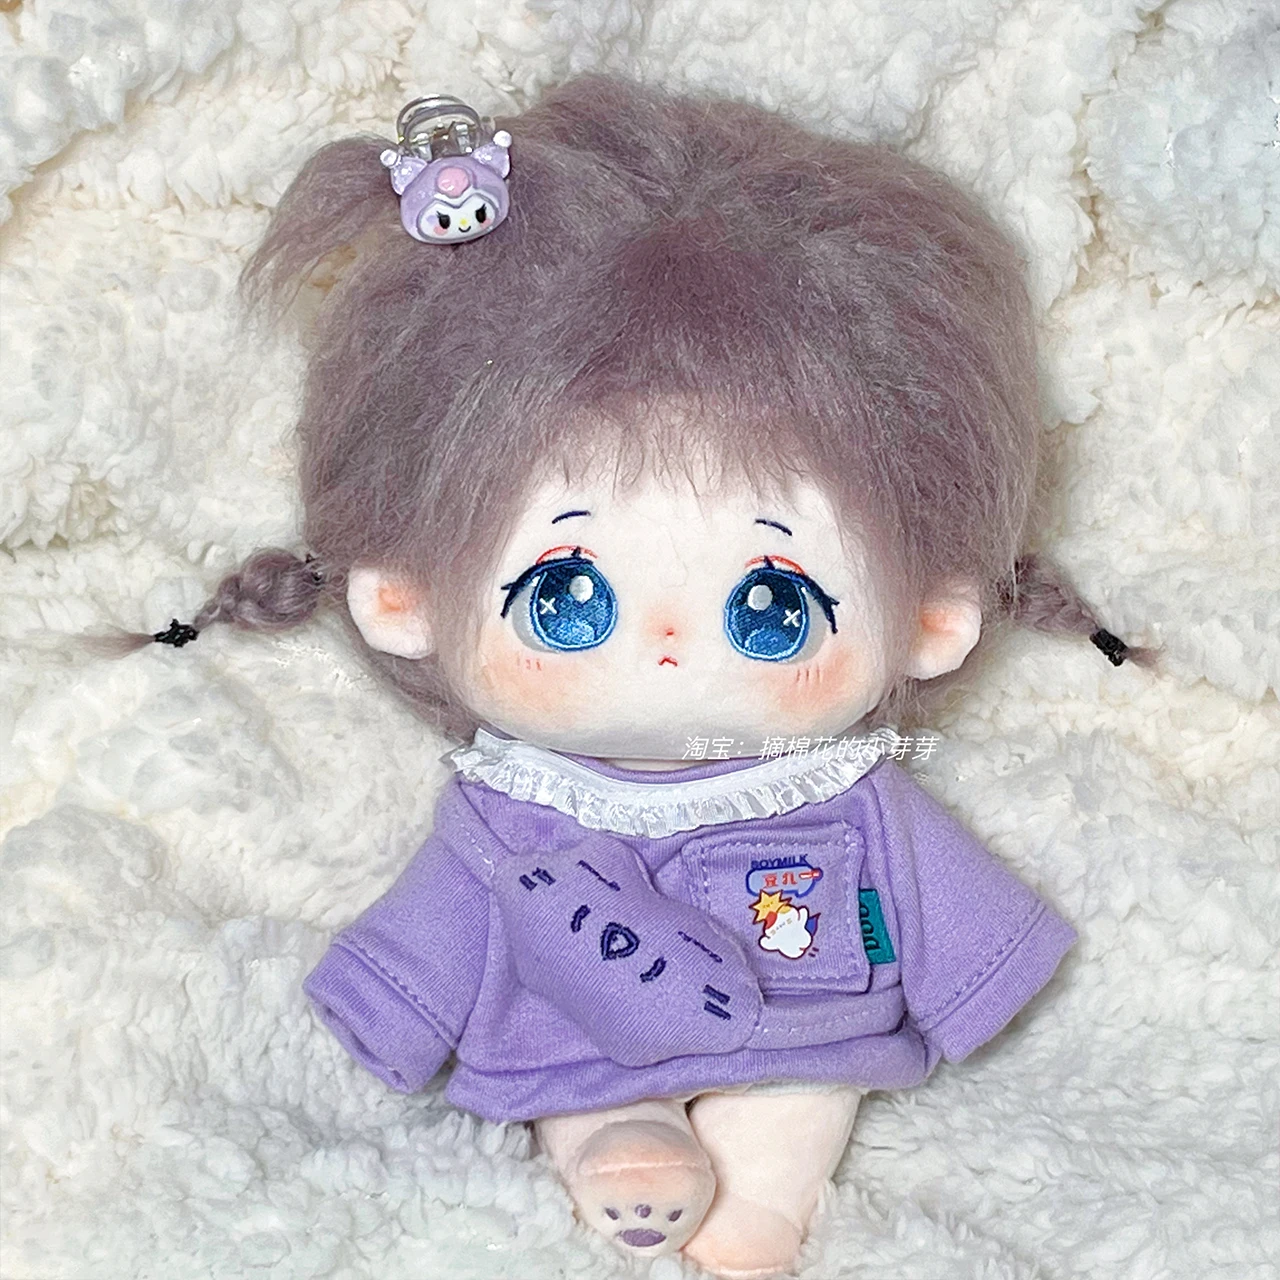 

Пурпурный Повседневный свитер Kpop без атрибутов 20 см, плюшевая хлопчатобумажная кукла, сменная одежда, наряд, косплей, милый подарок на день рождения